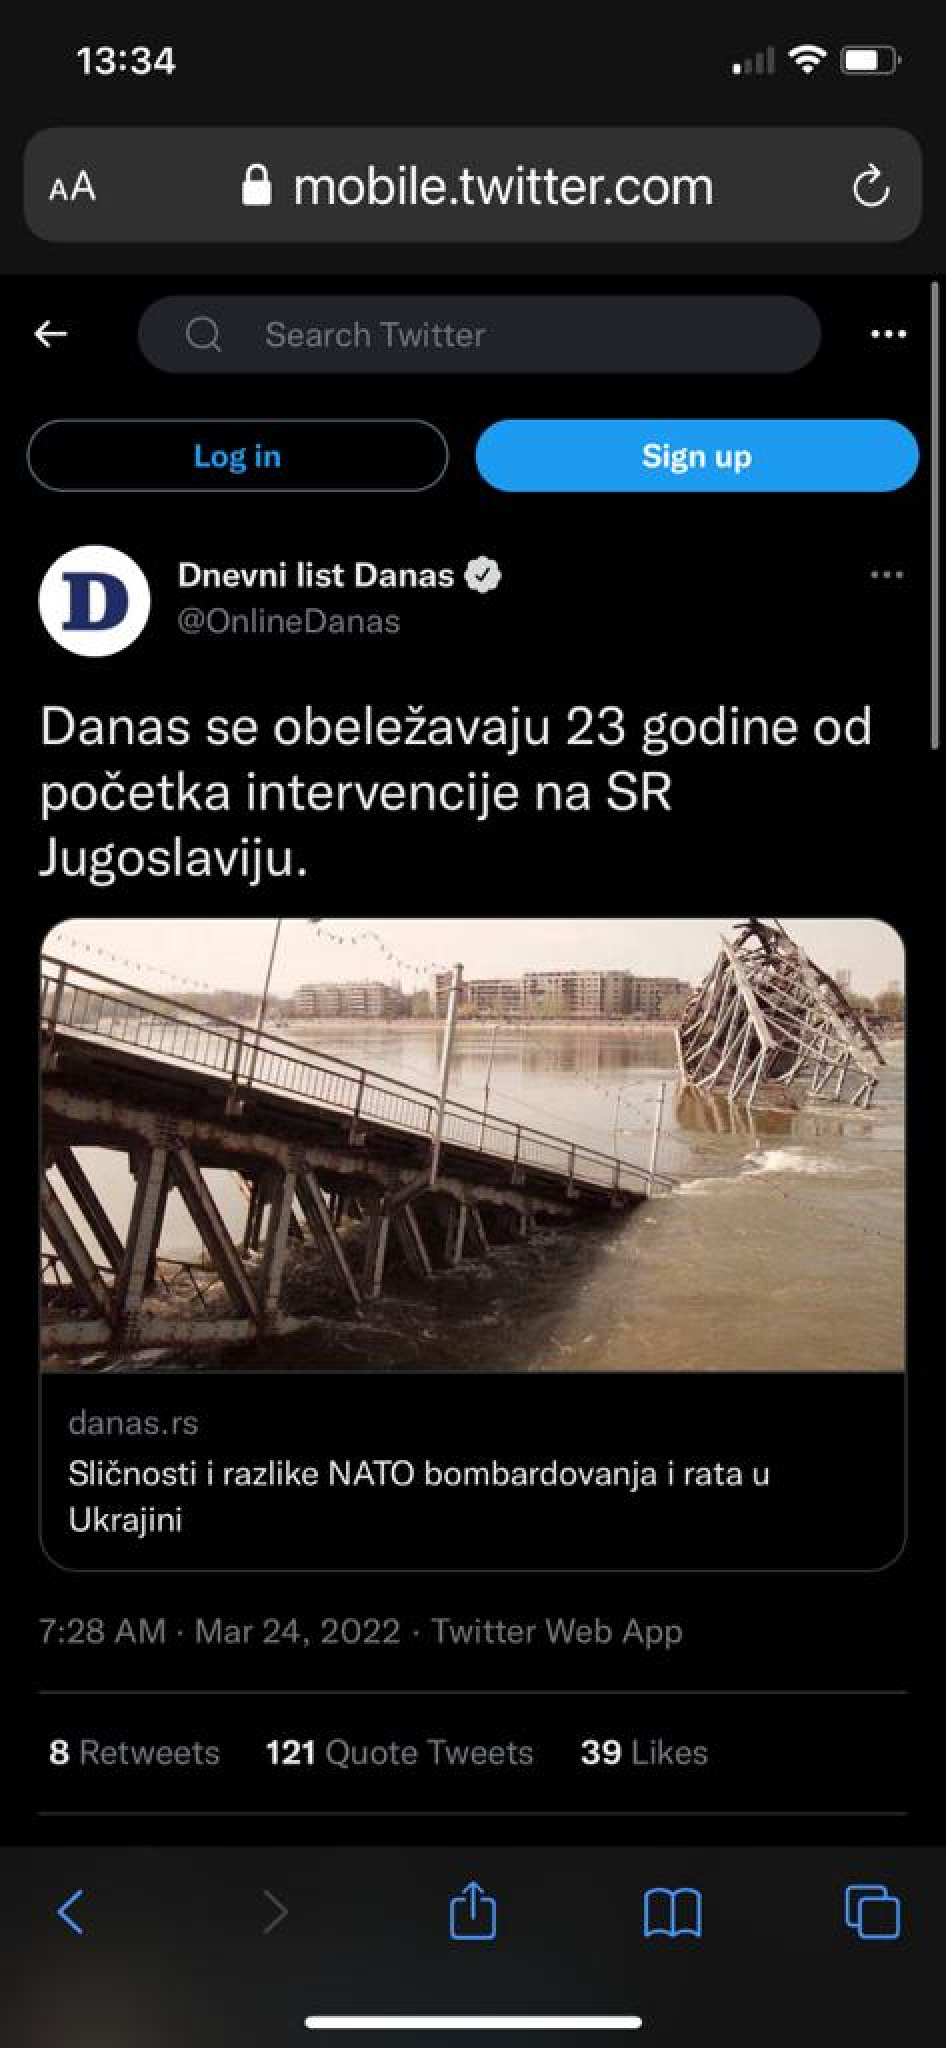 SKANDAL NAD SKANDALIMA Đilasovski tabloidi pravdaju ubijanje Srba: To je bila samo NATO intervencija